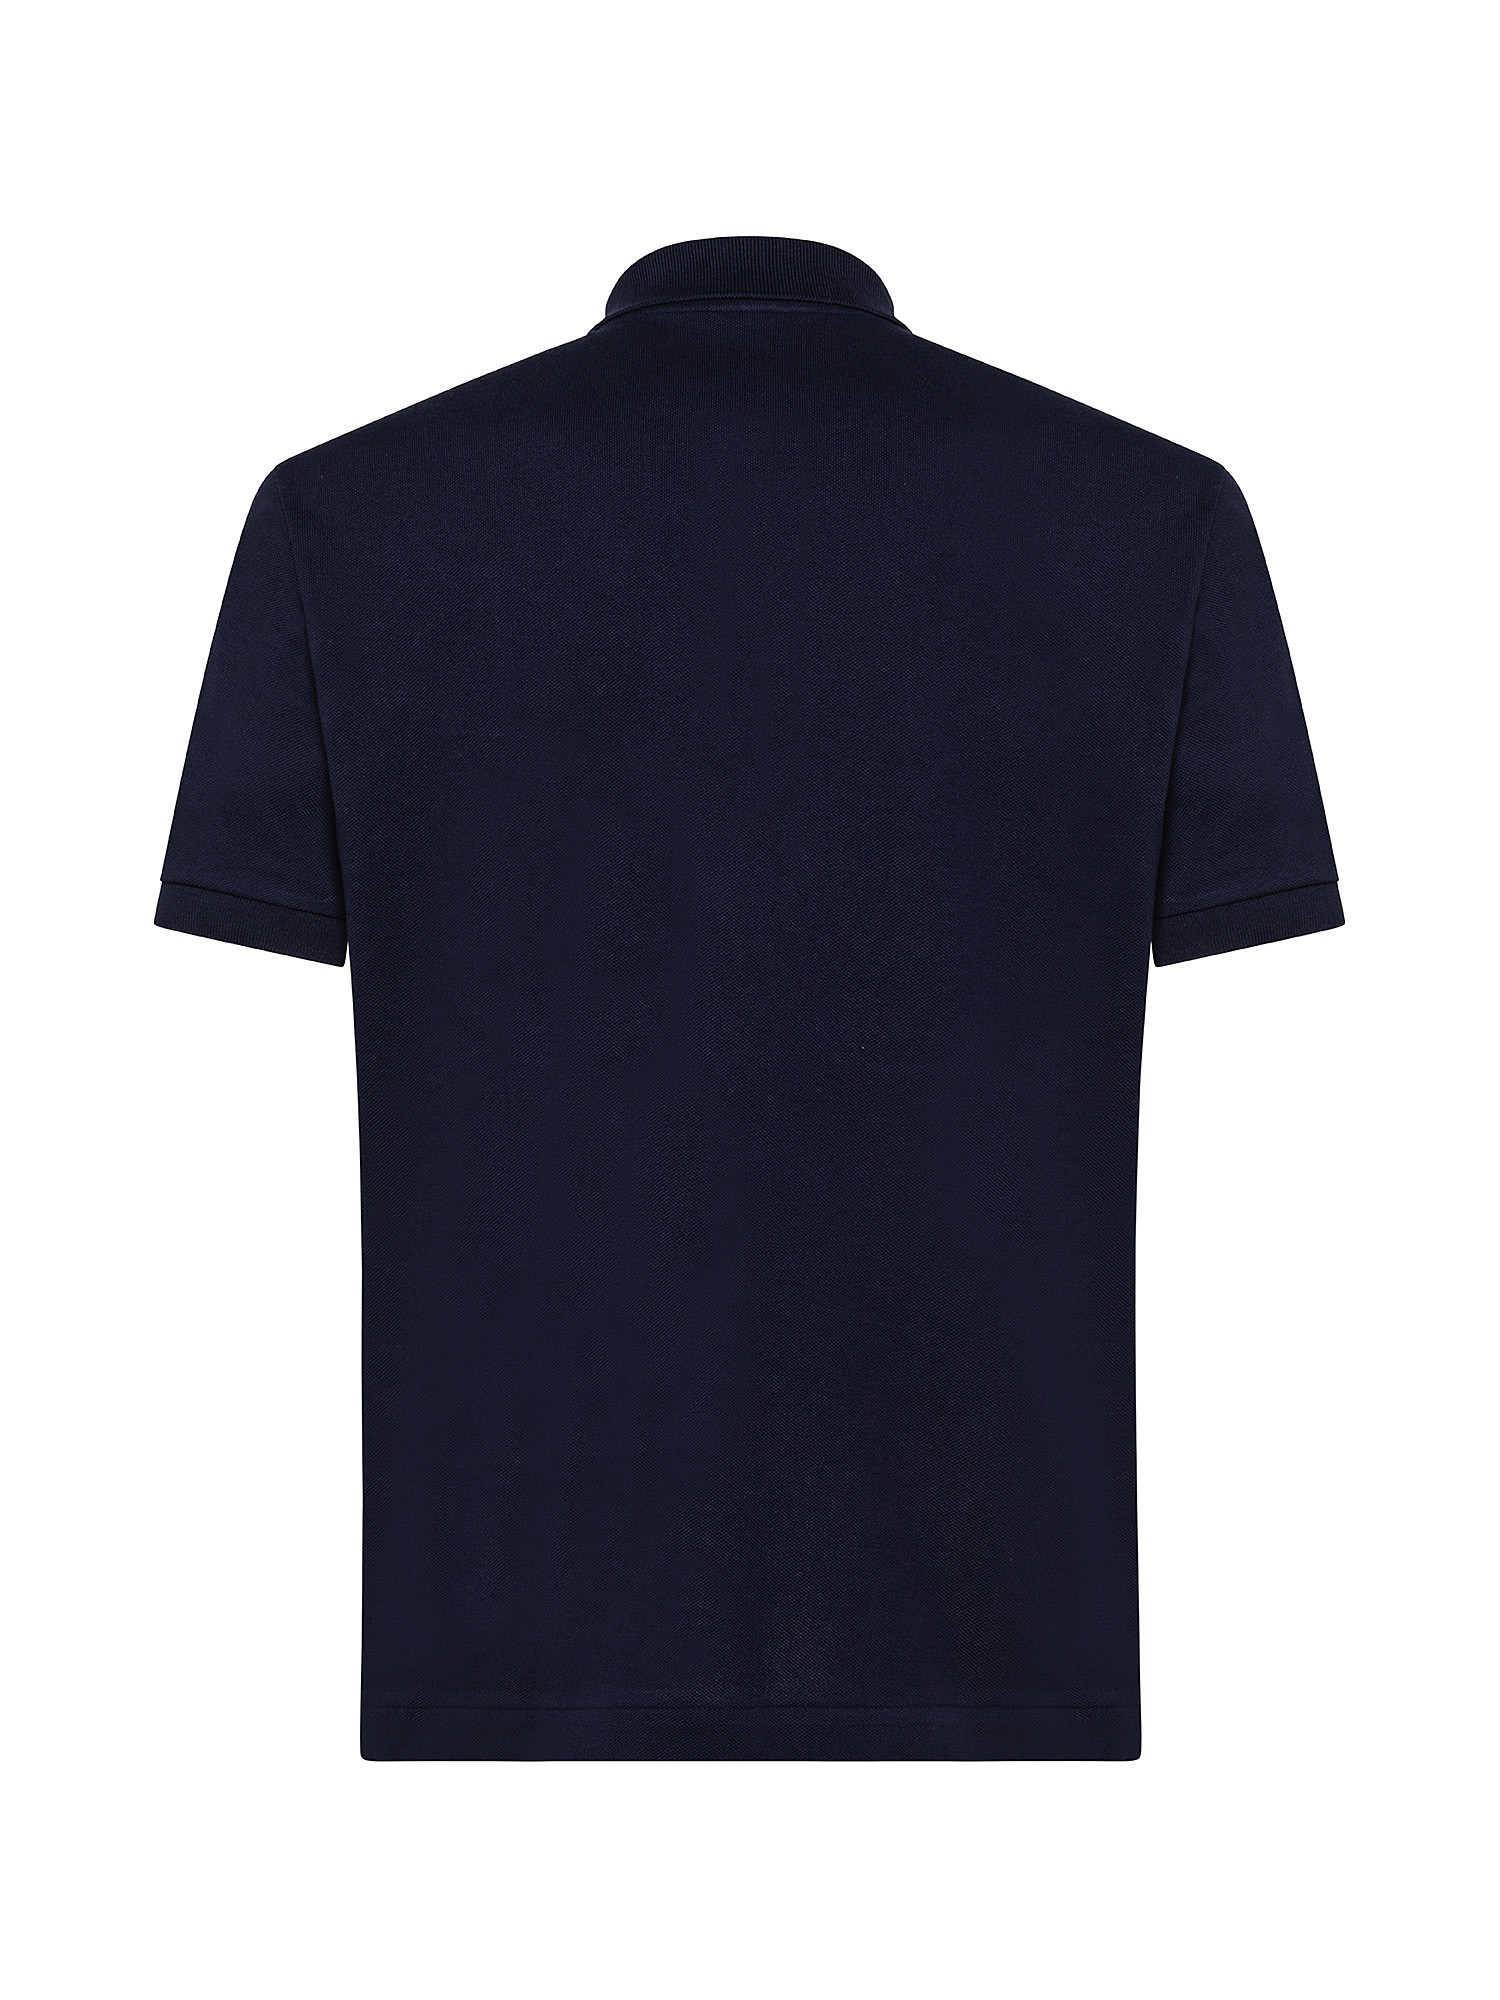 Polo shirt, Blue, large image number 1